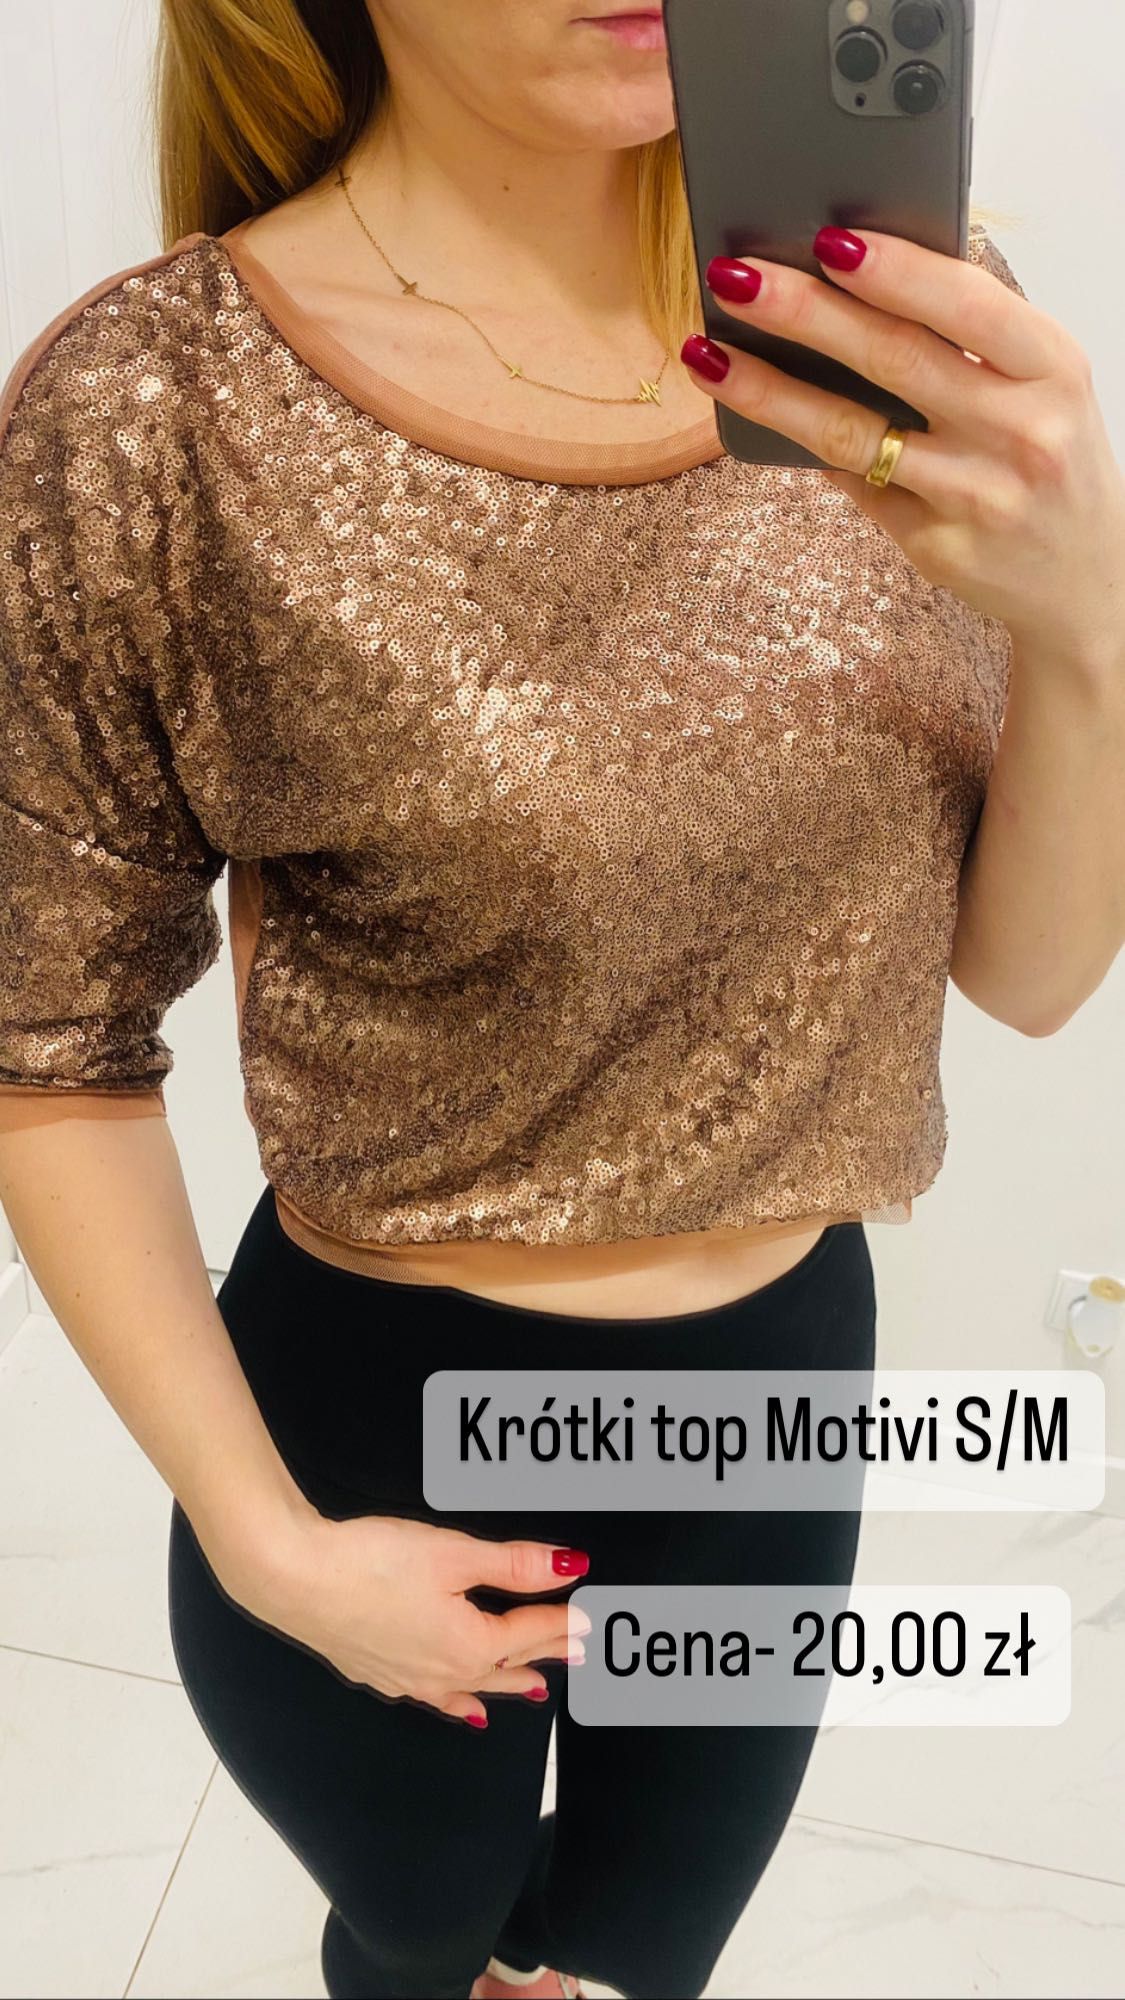 Bluzka krótki top krótki Motivi S/M luźny złoty cekiny różowe złoto